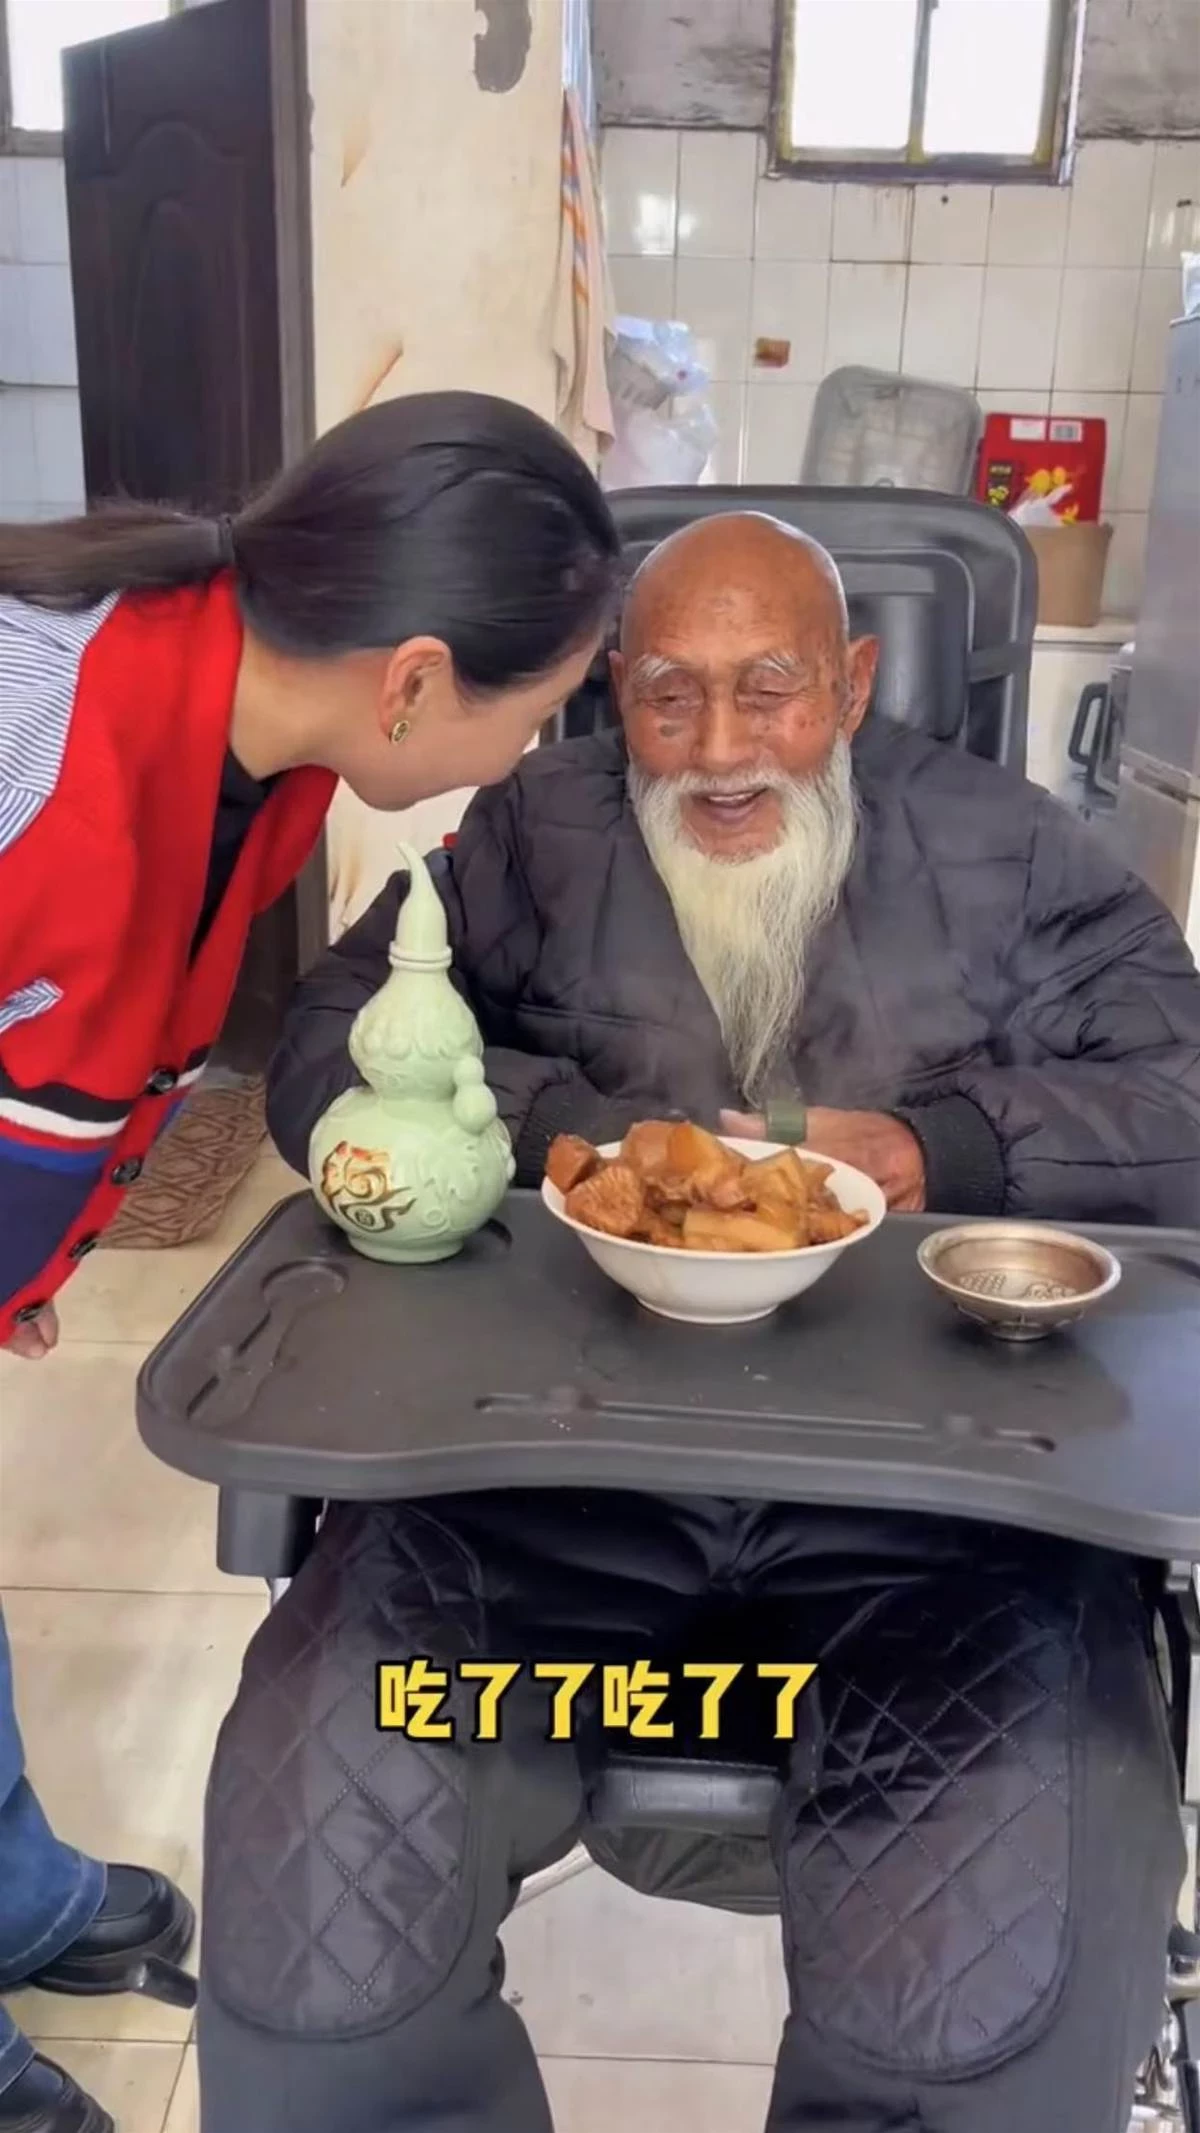 107歲阿公走紅！孫媳婦端肉上桌，他咧嘴笑超開心「就愛吃肉！」；網淚目「老人家的快樂這麼簡單」